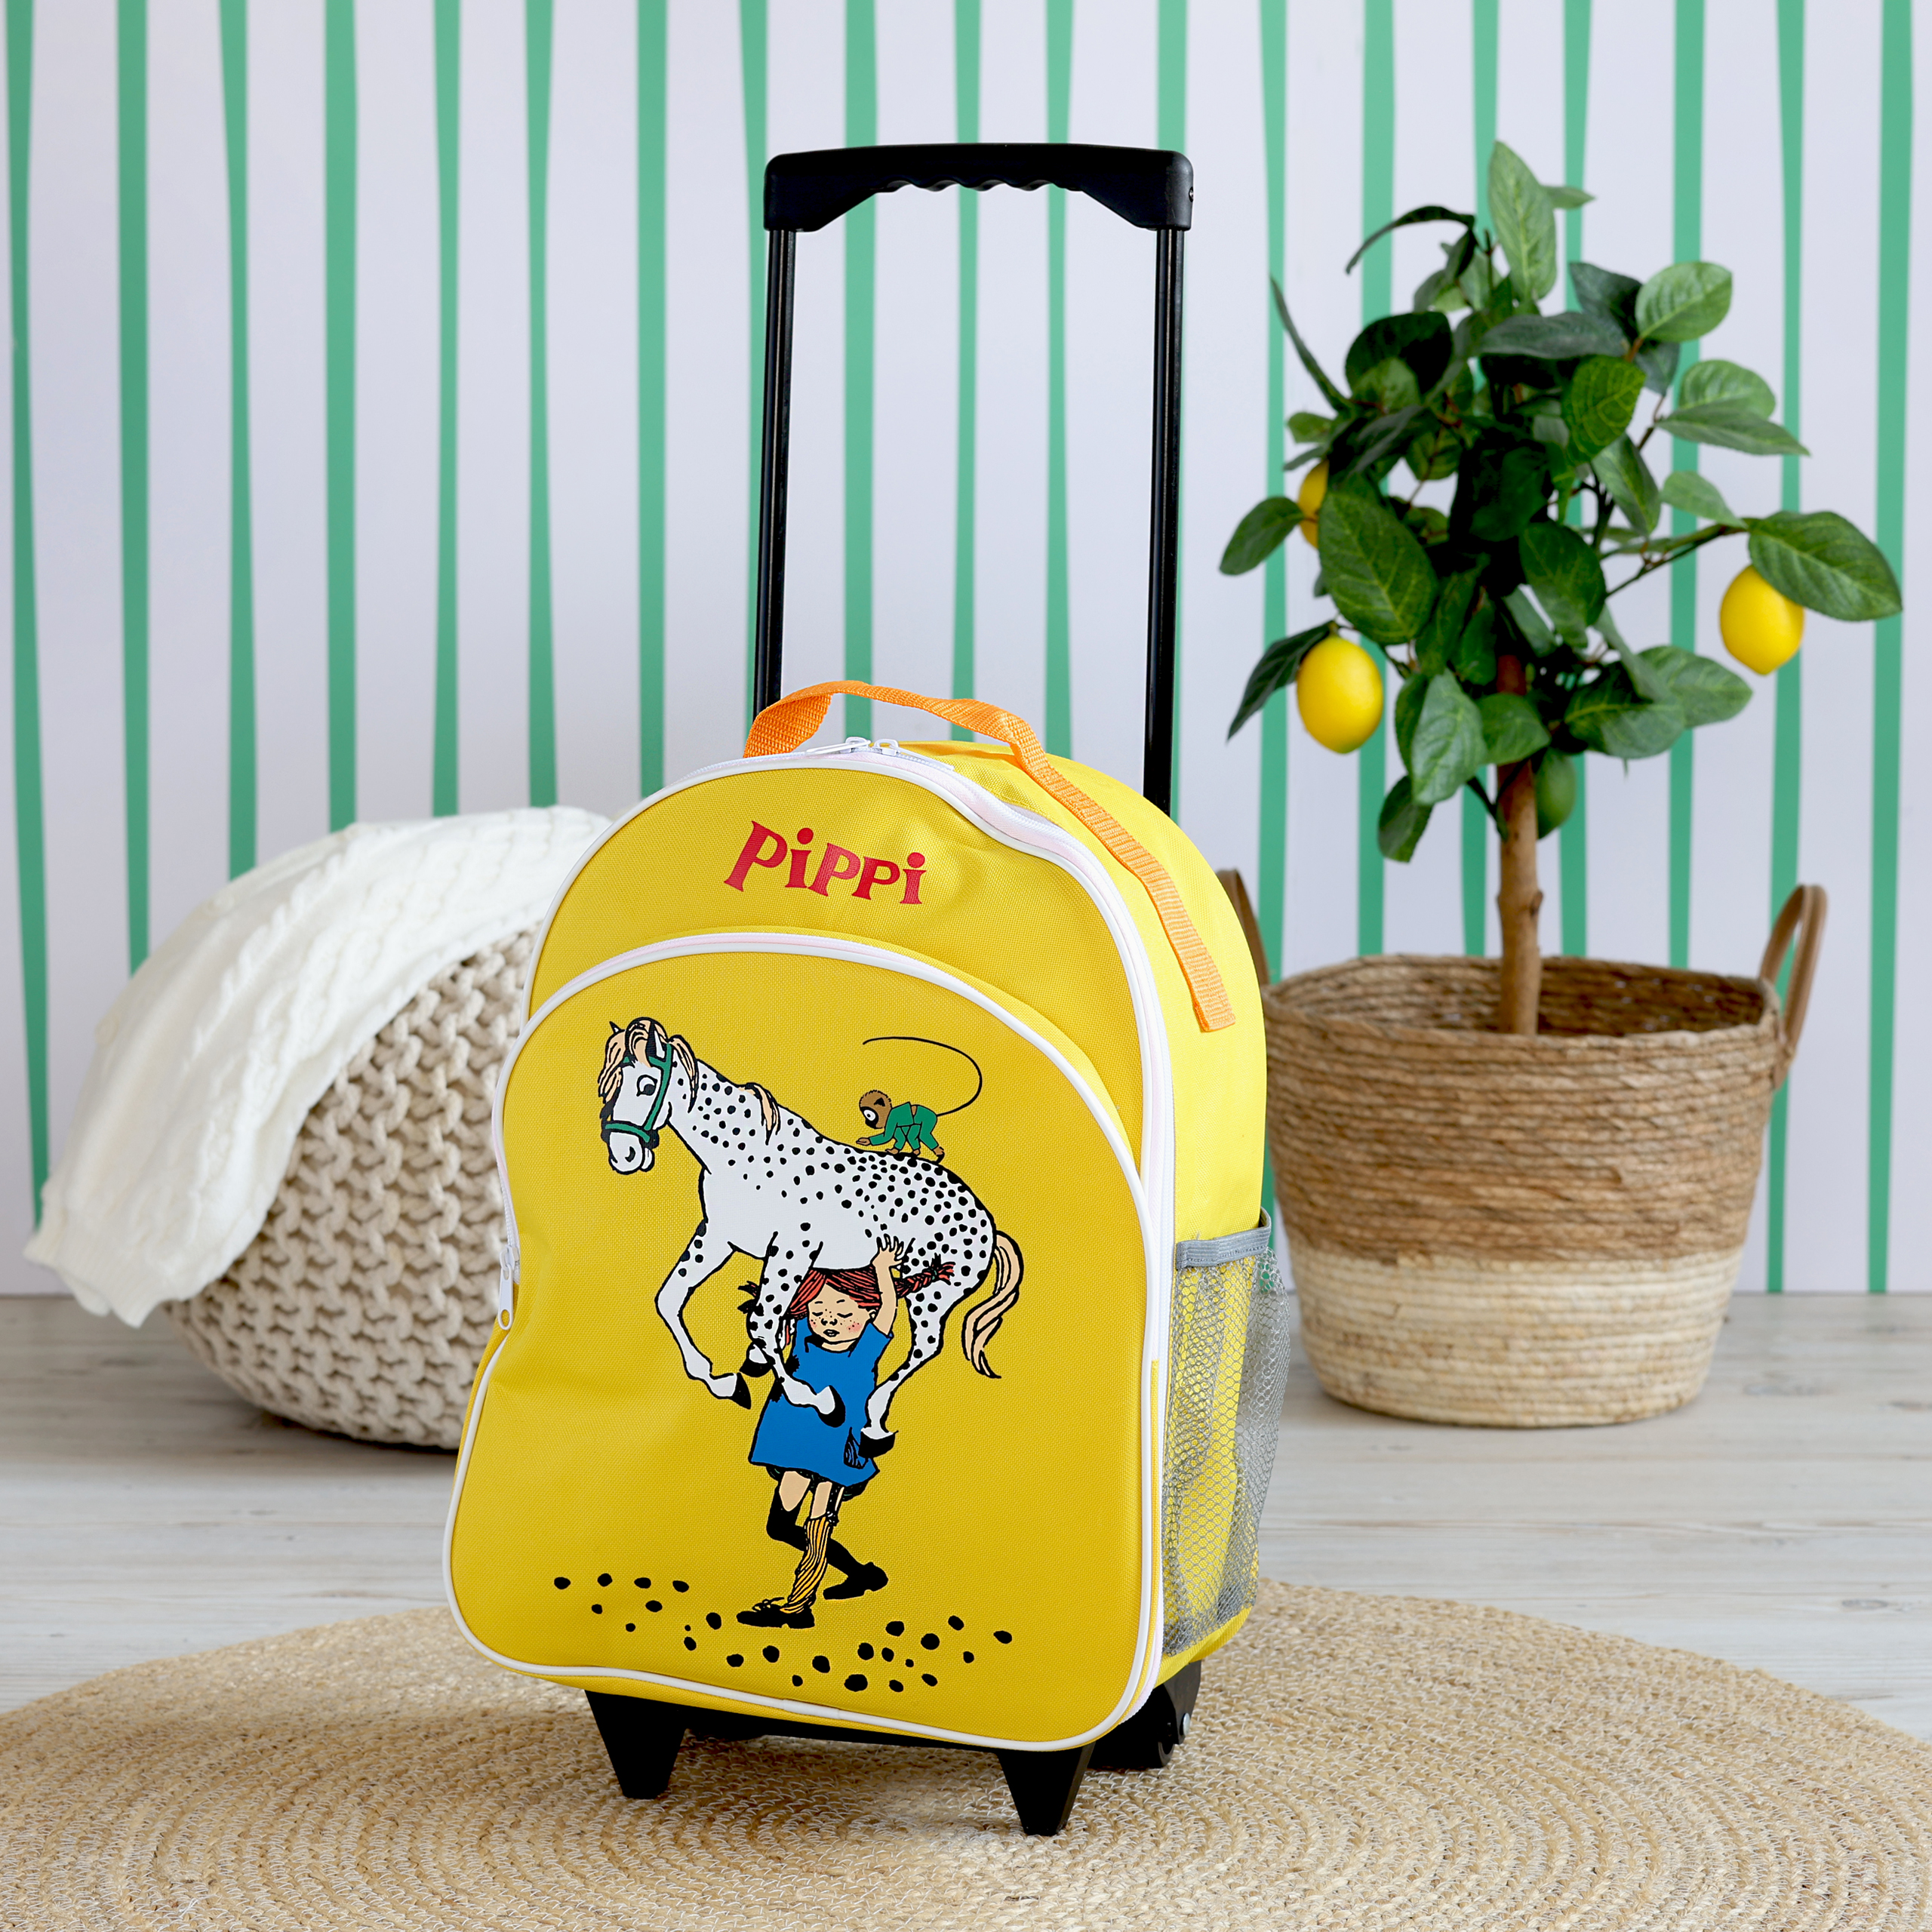 Pippi peppi pitkätossu lasten laukku matkalaukku keltainen